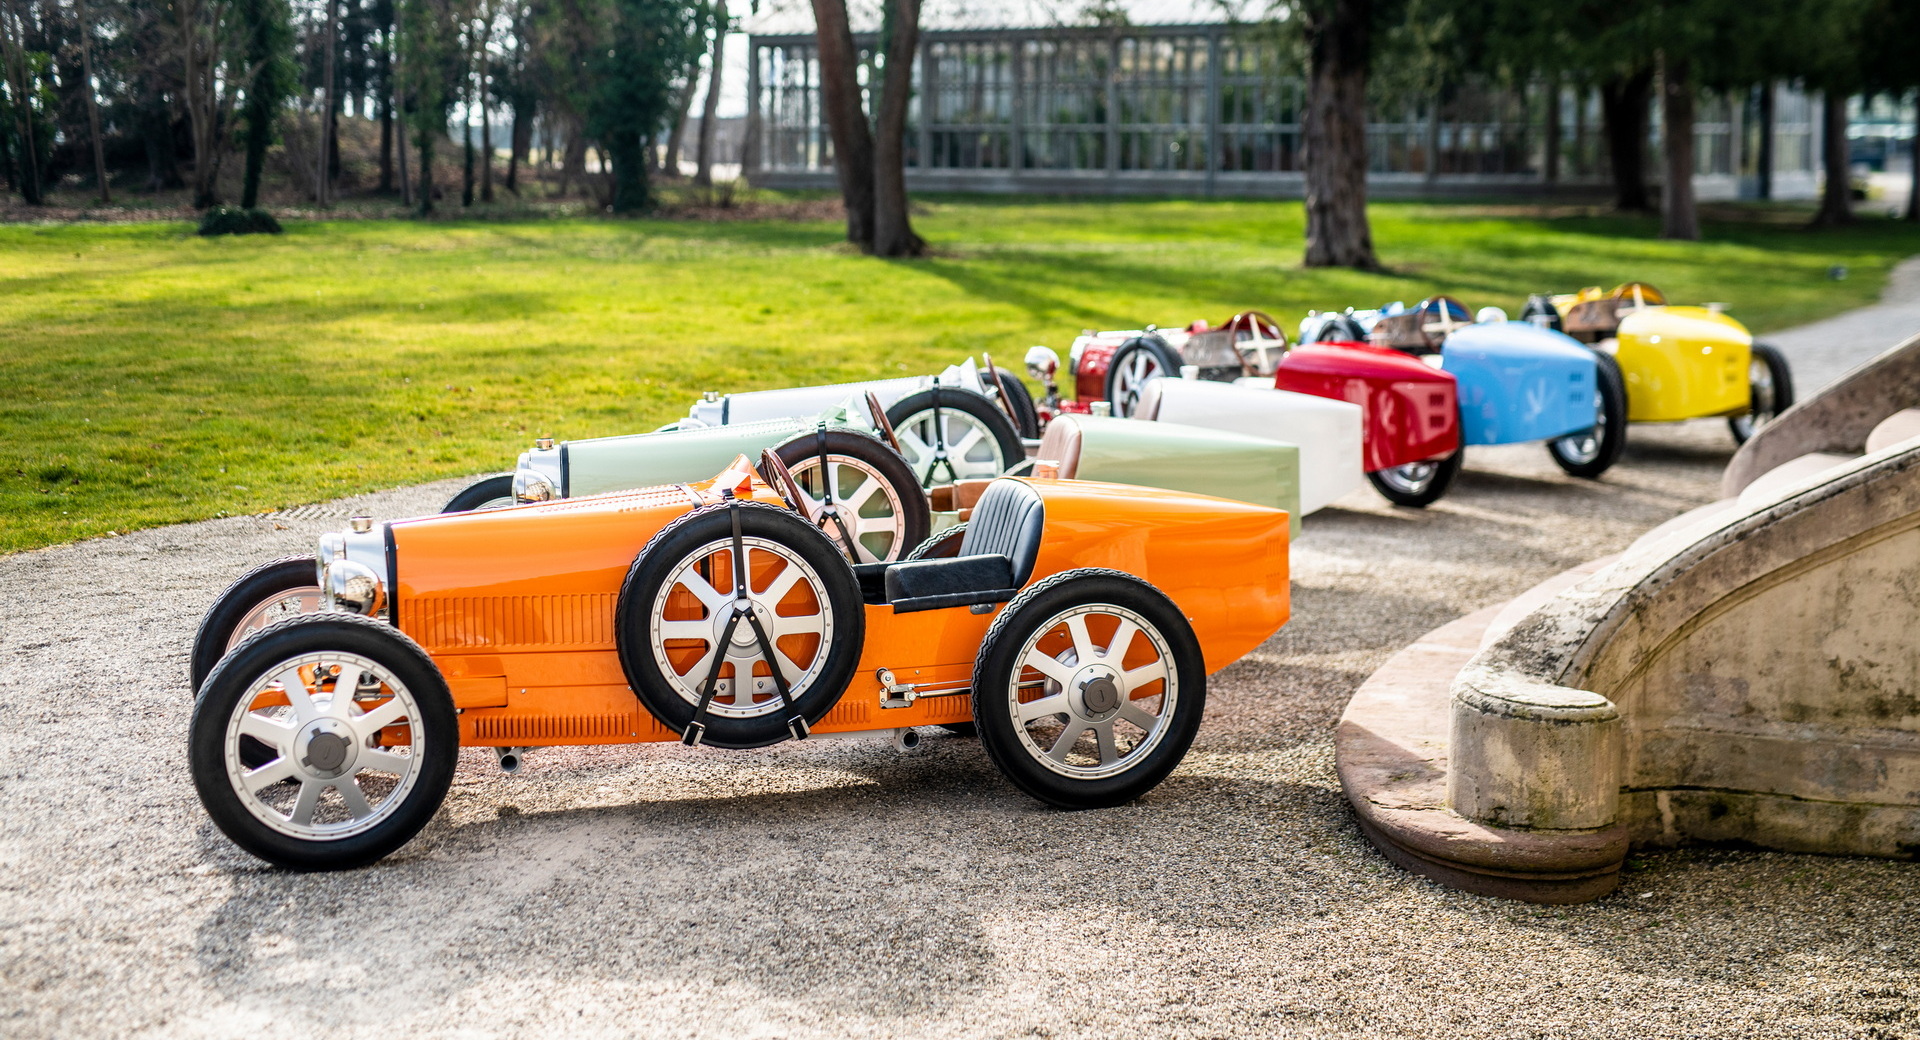 Ghé thăm nhà máy Bugatti, đại gia bí ẩn mua luôn 8 chiếc xe với giá quy đổi không dưới 150 tỷ đồng - Ảnh 5.